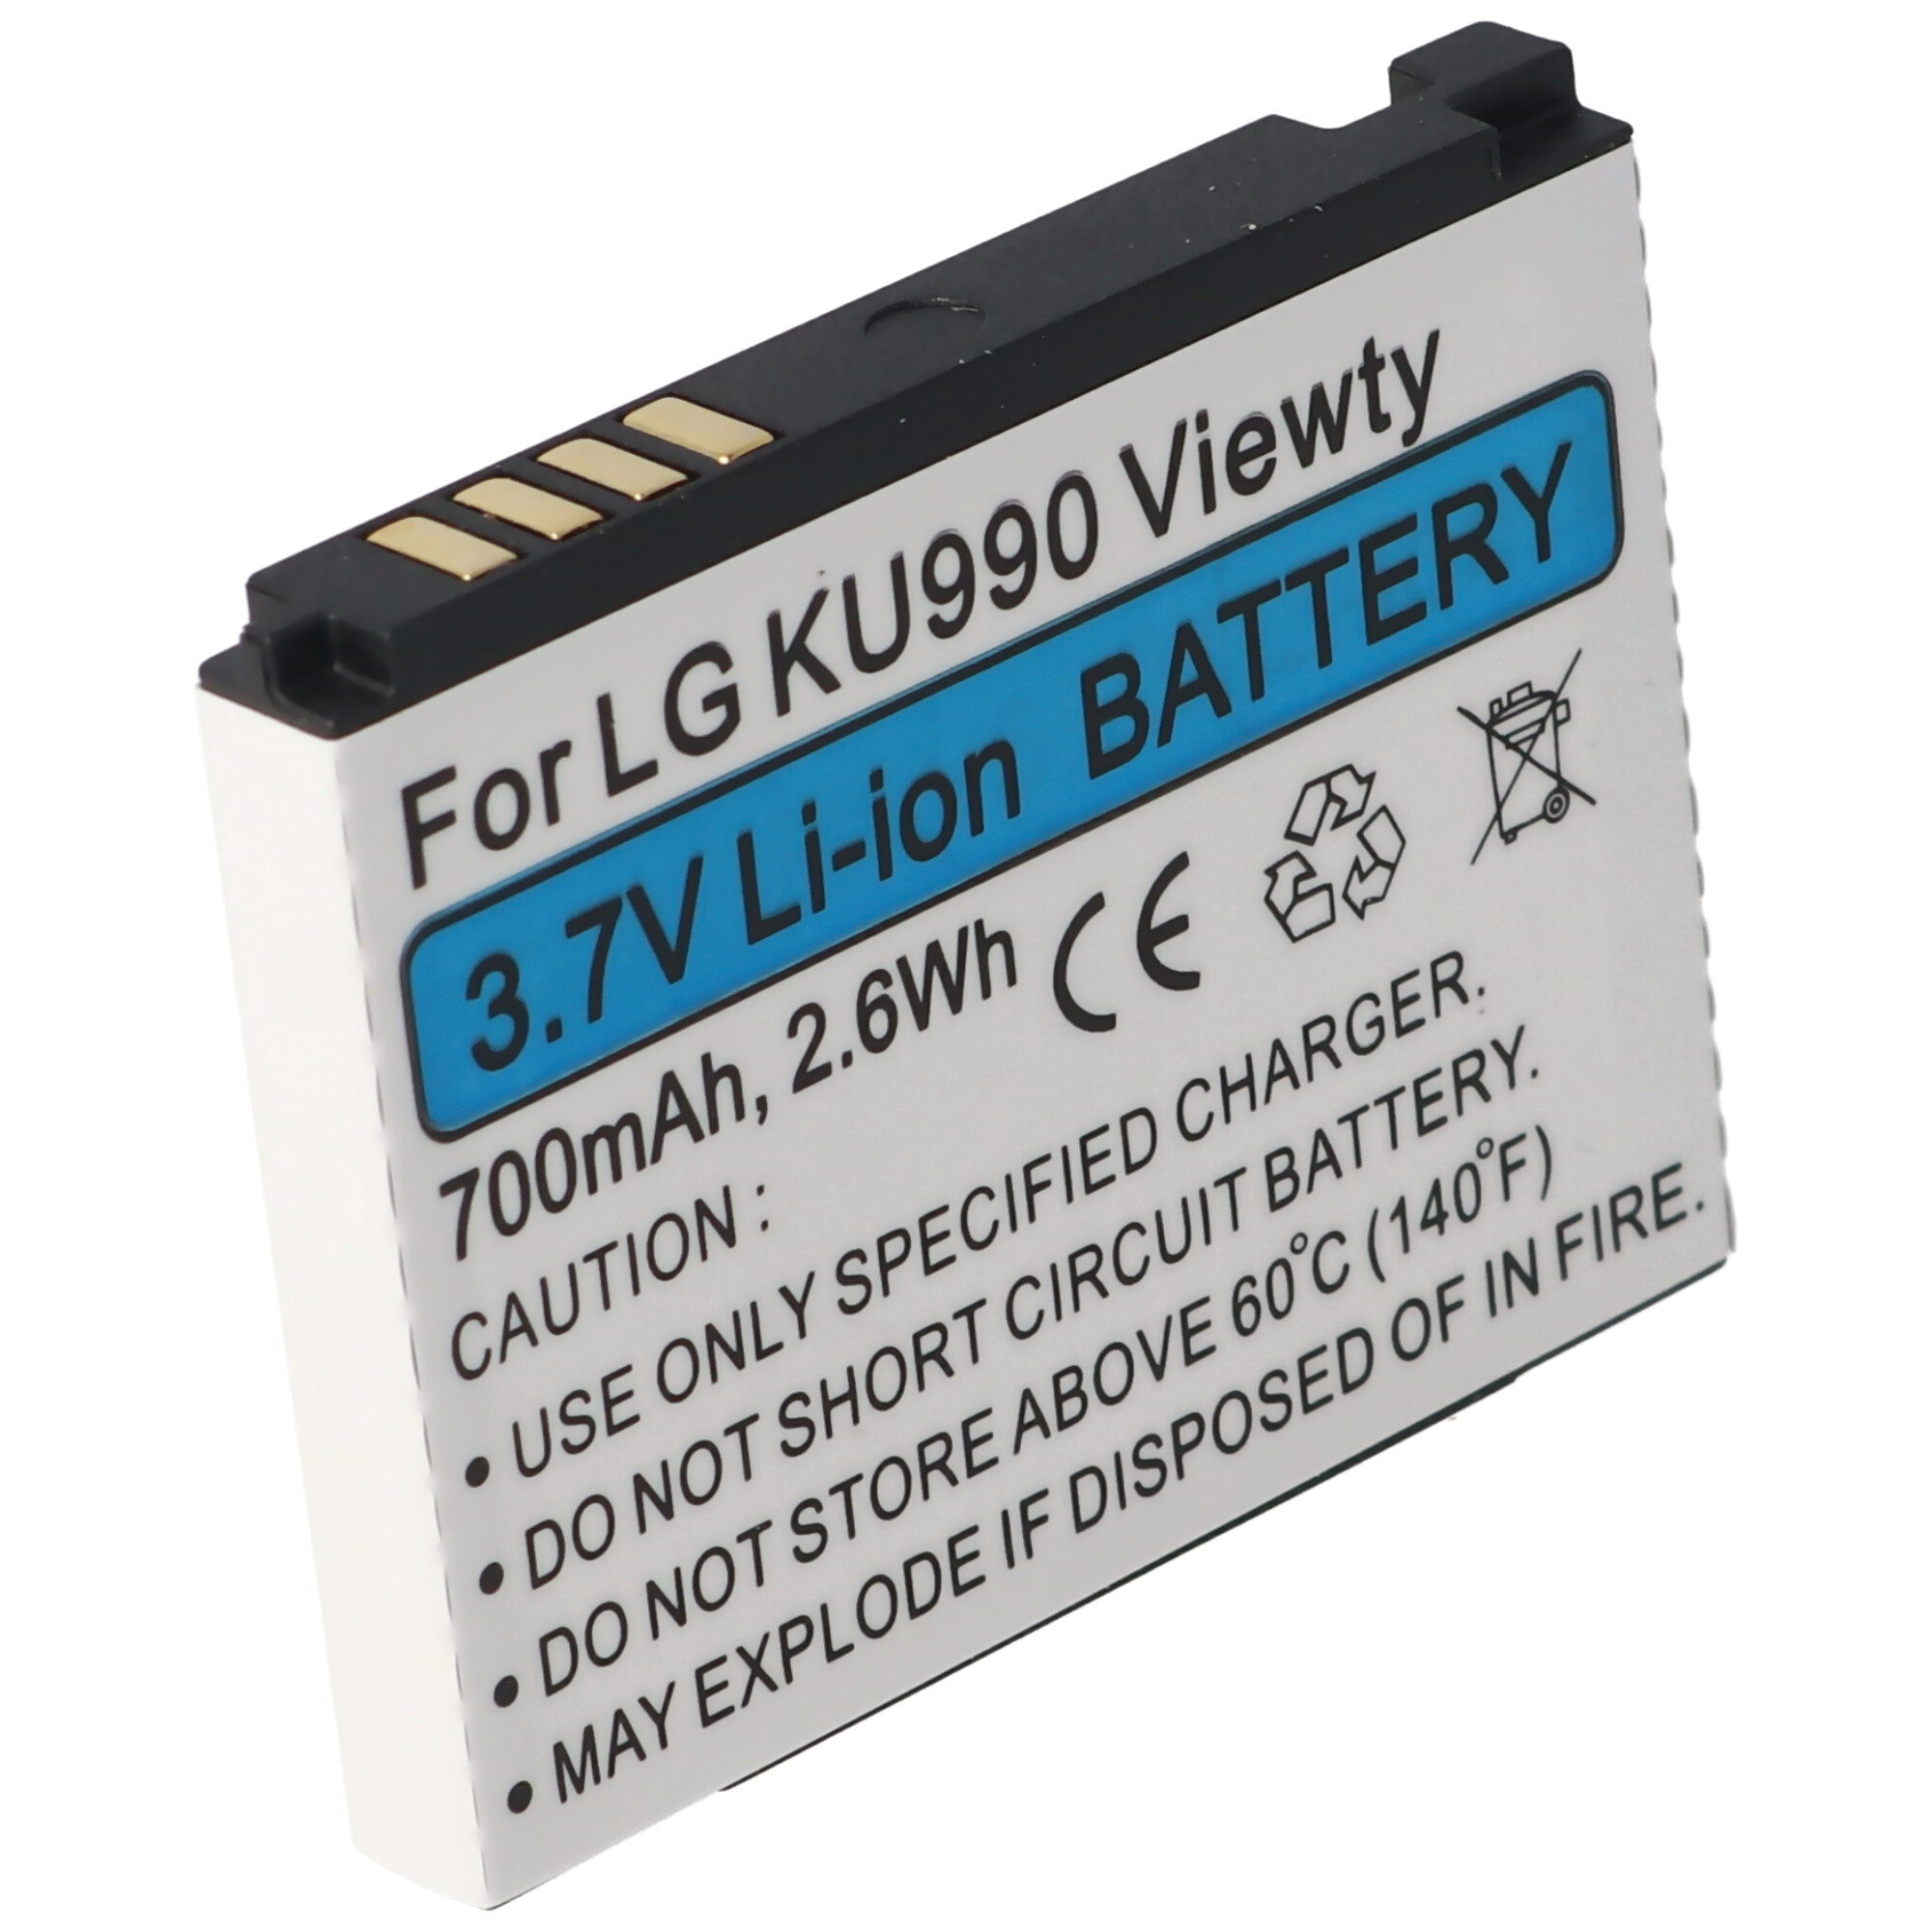 Akku passend für LG KU990 Viewty, HB620T, Li-Ion, 3,7V, 700mAh, 2,6Wh